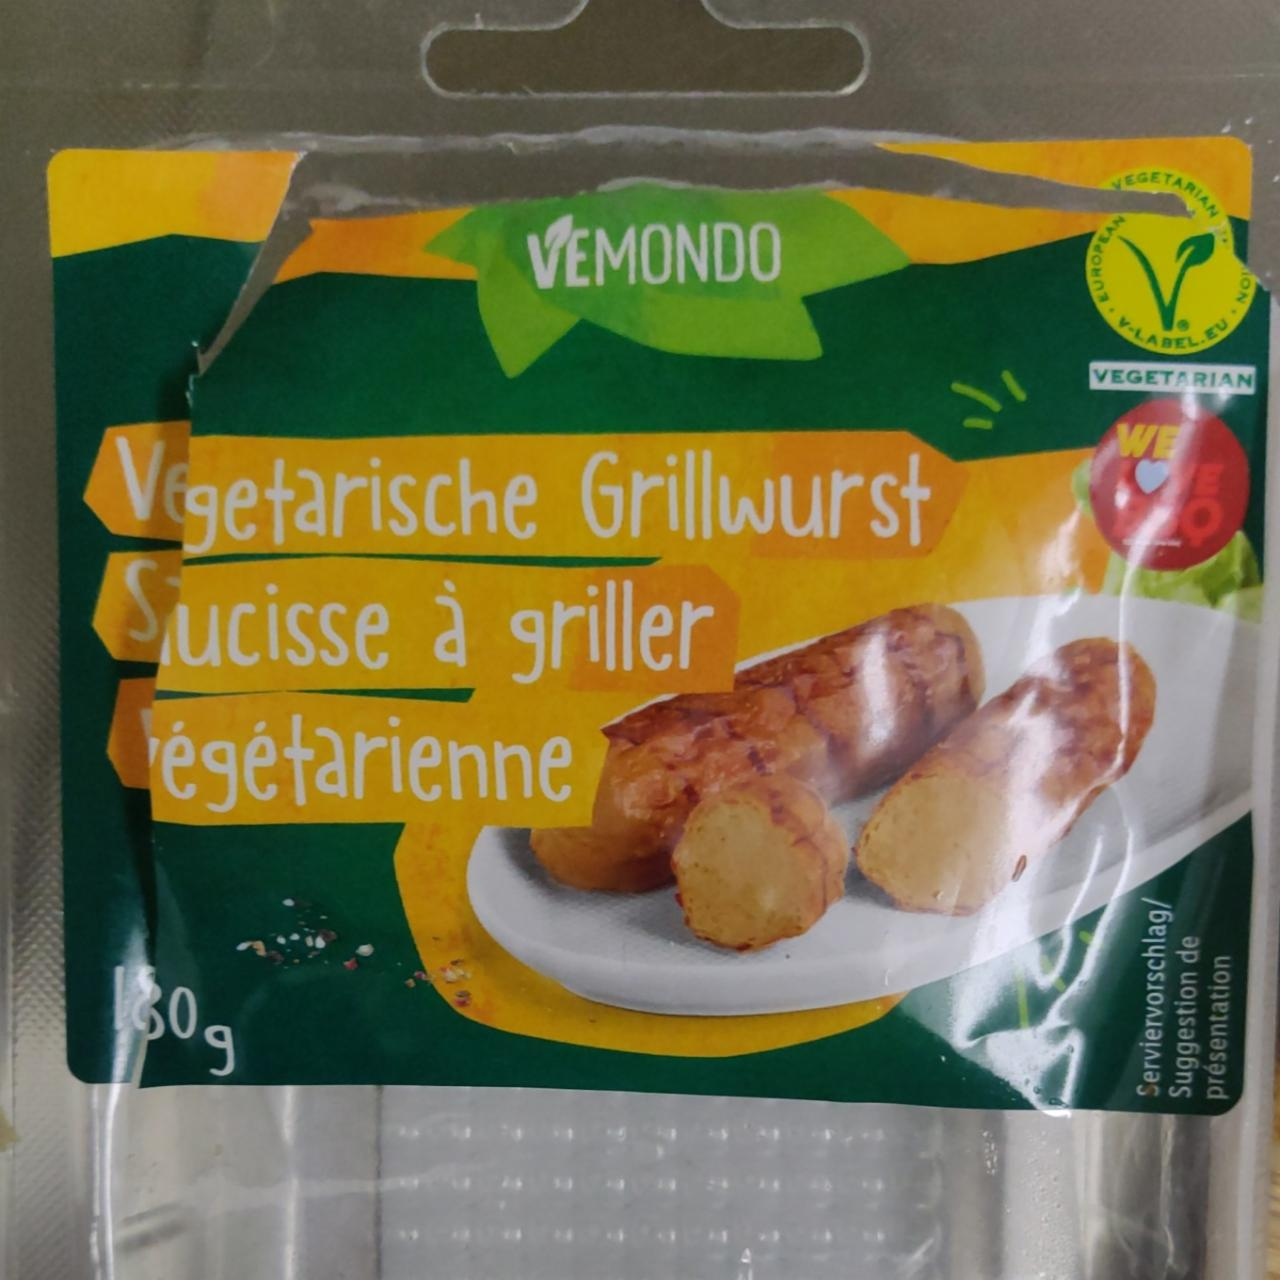 Fotografie - Vegetarische Grillwurst Vemondo